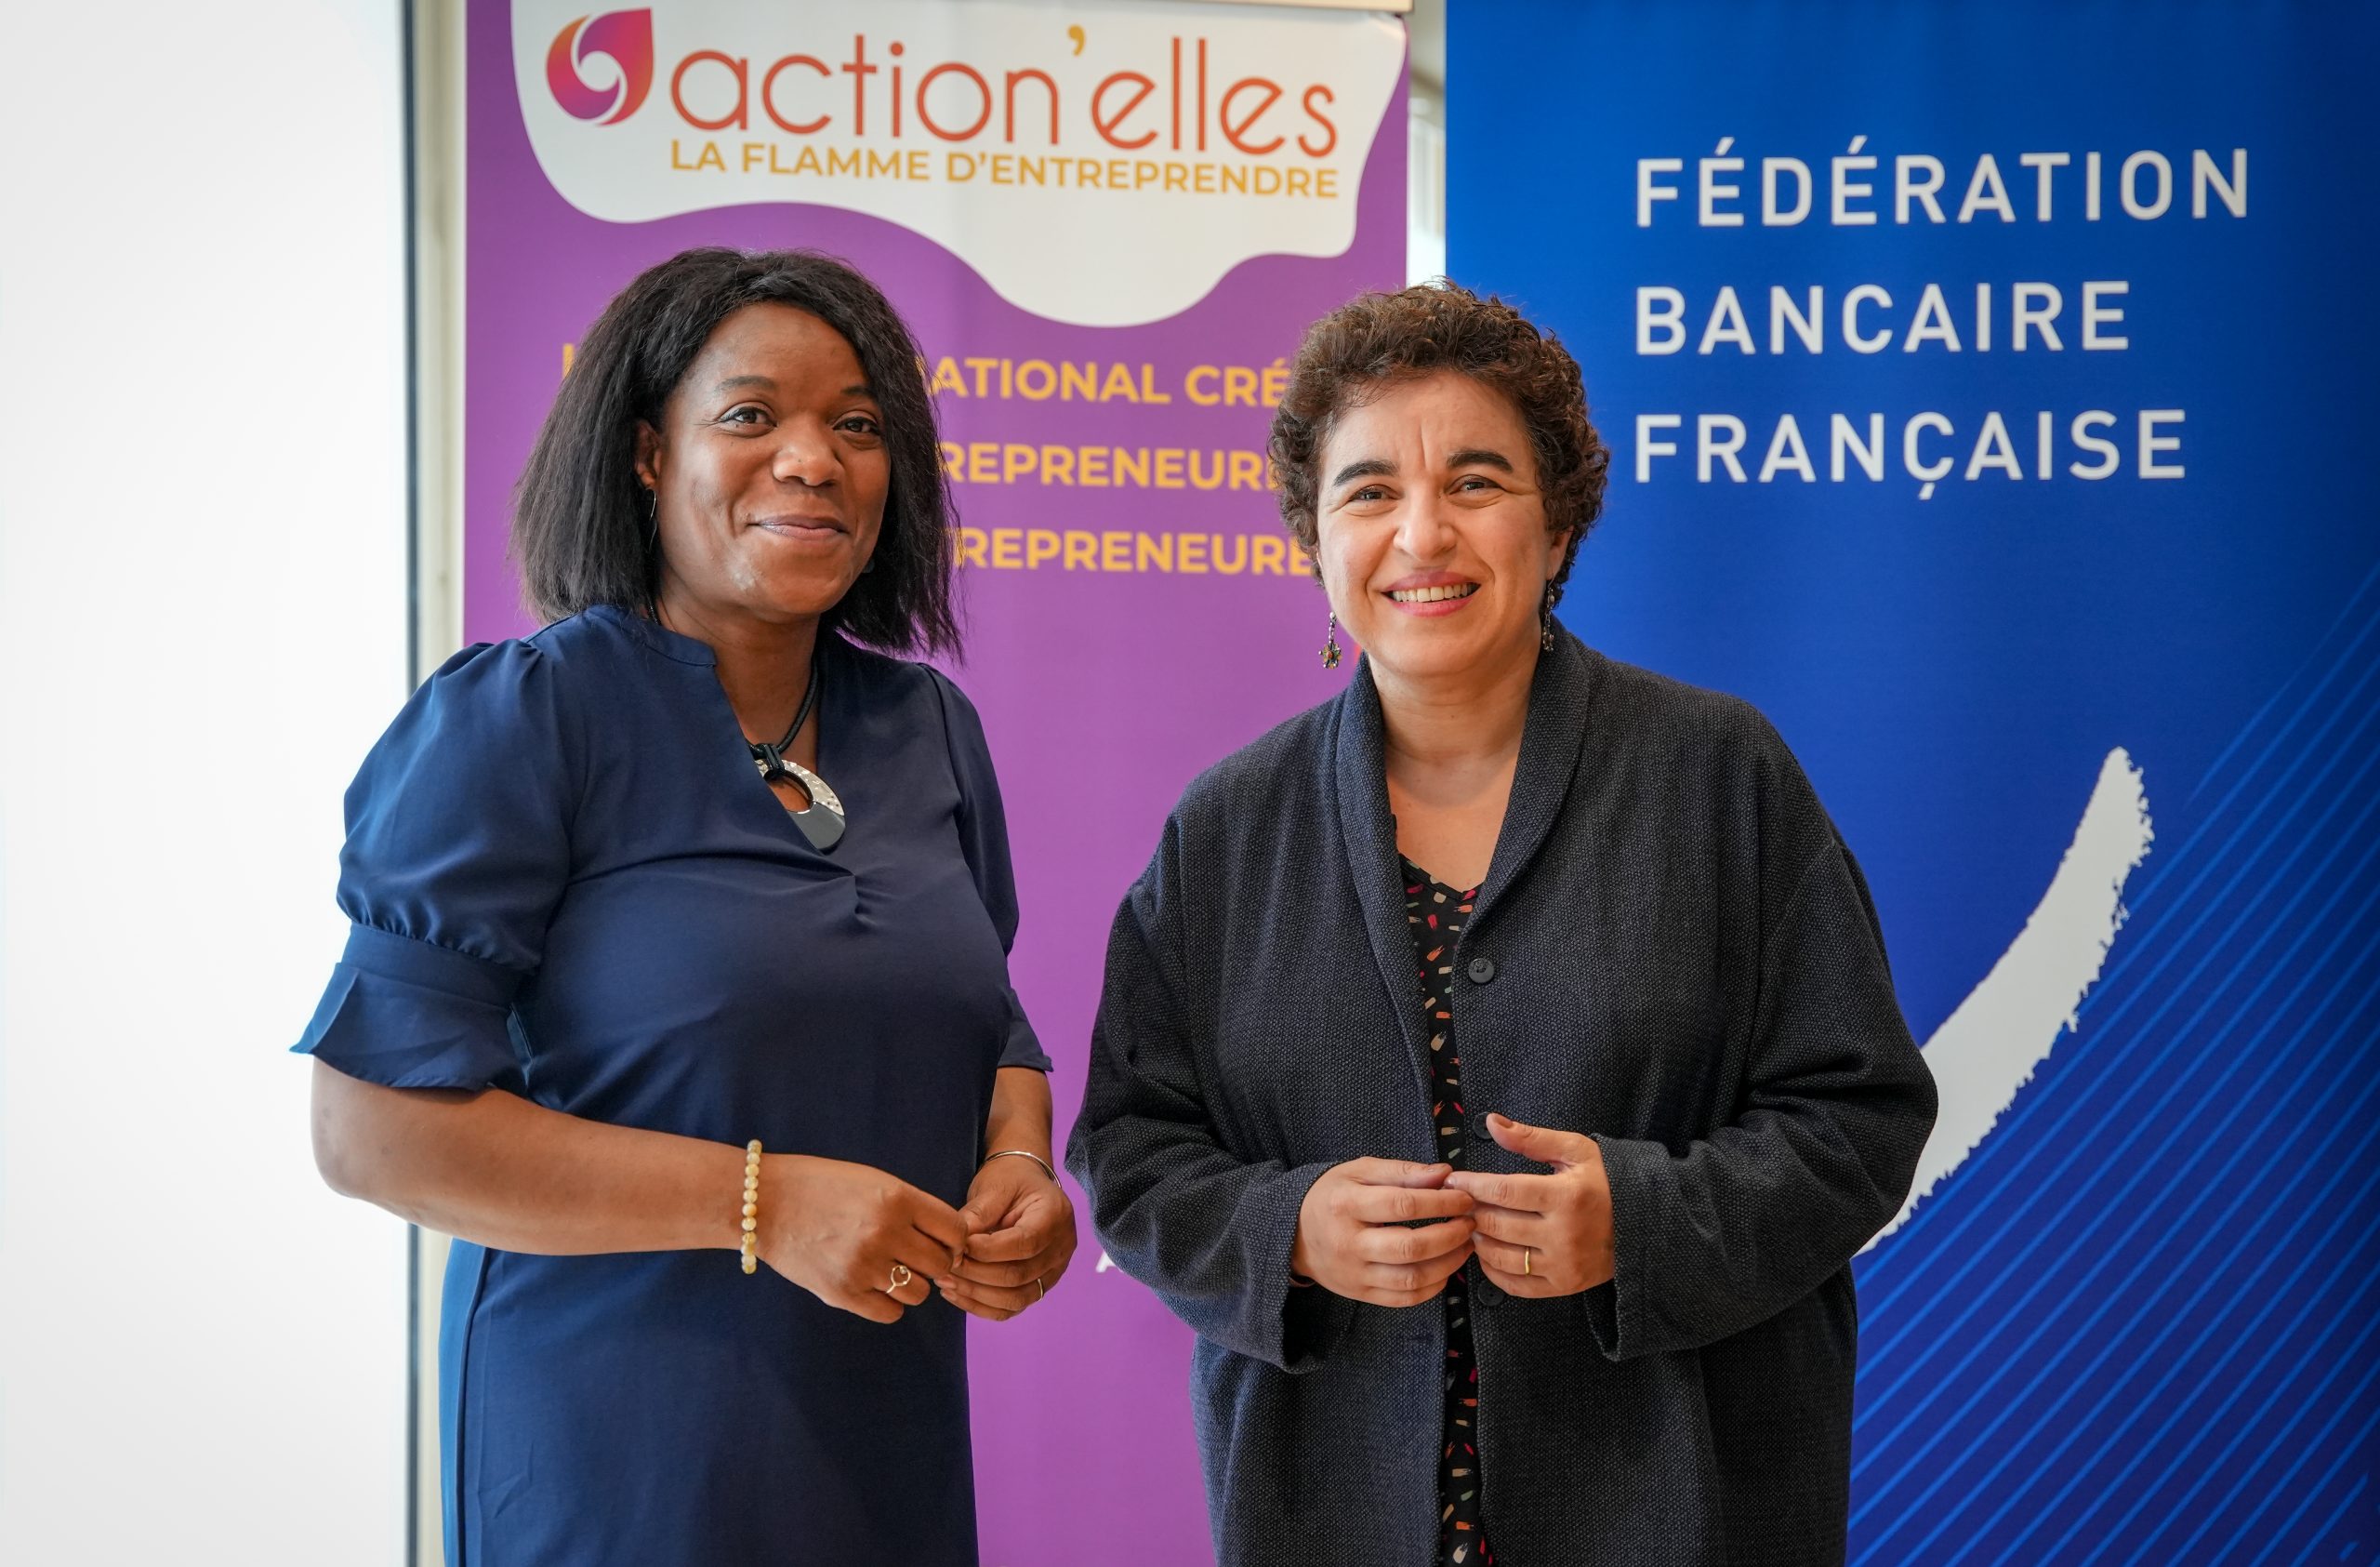 La Fédération bancaire française et Action’elles : un partenariat pour promouvoir...